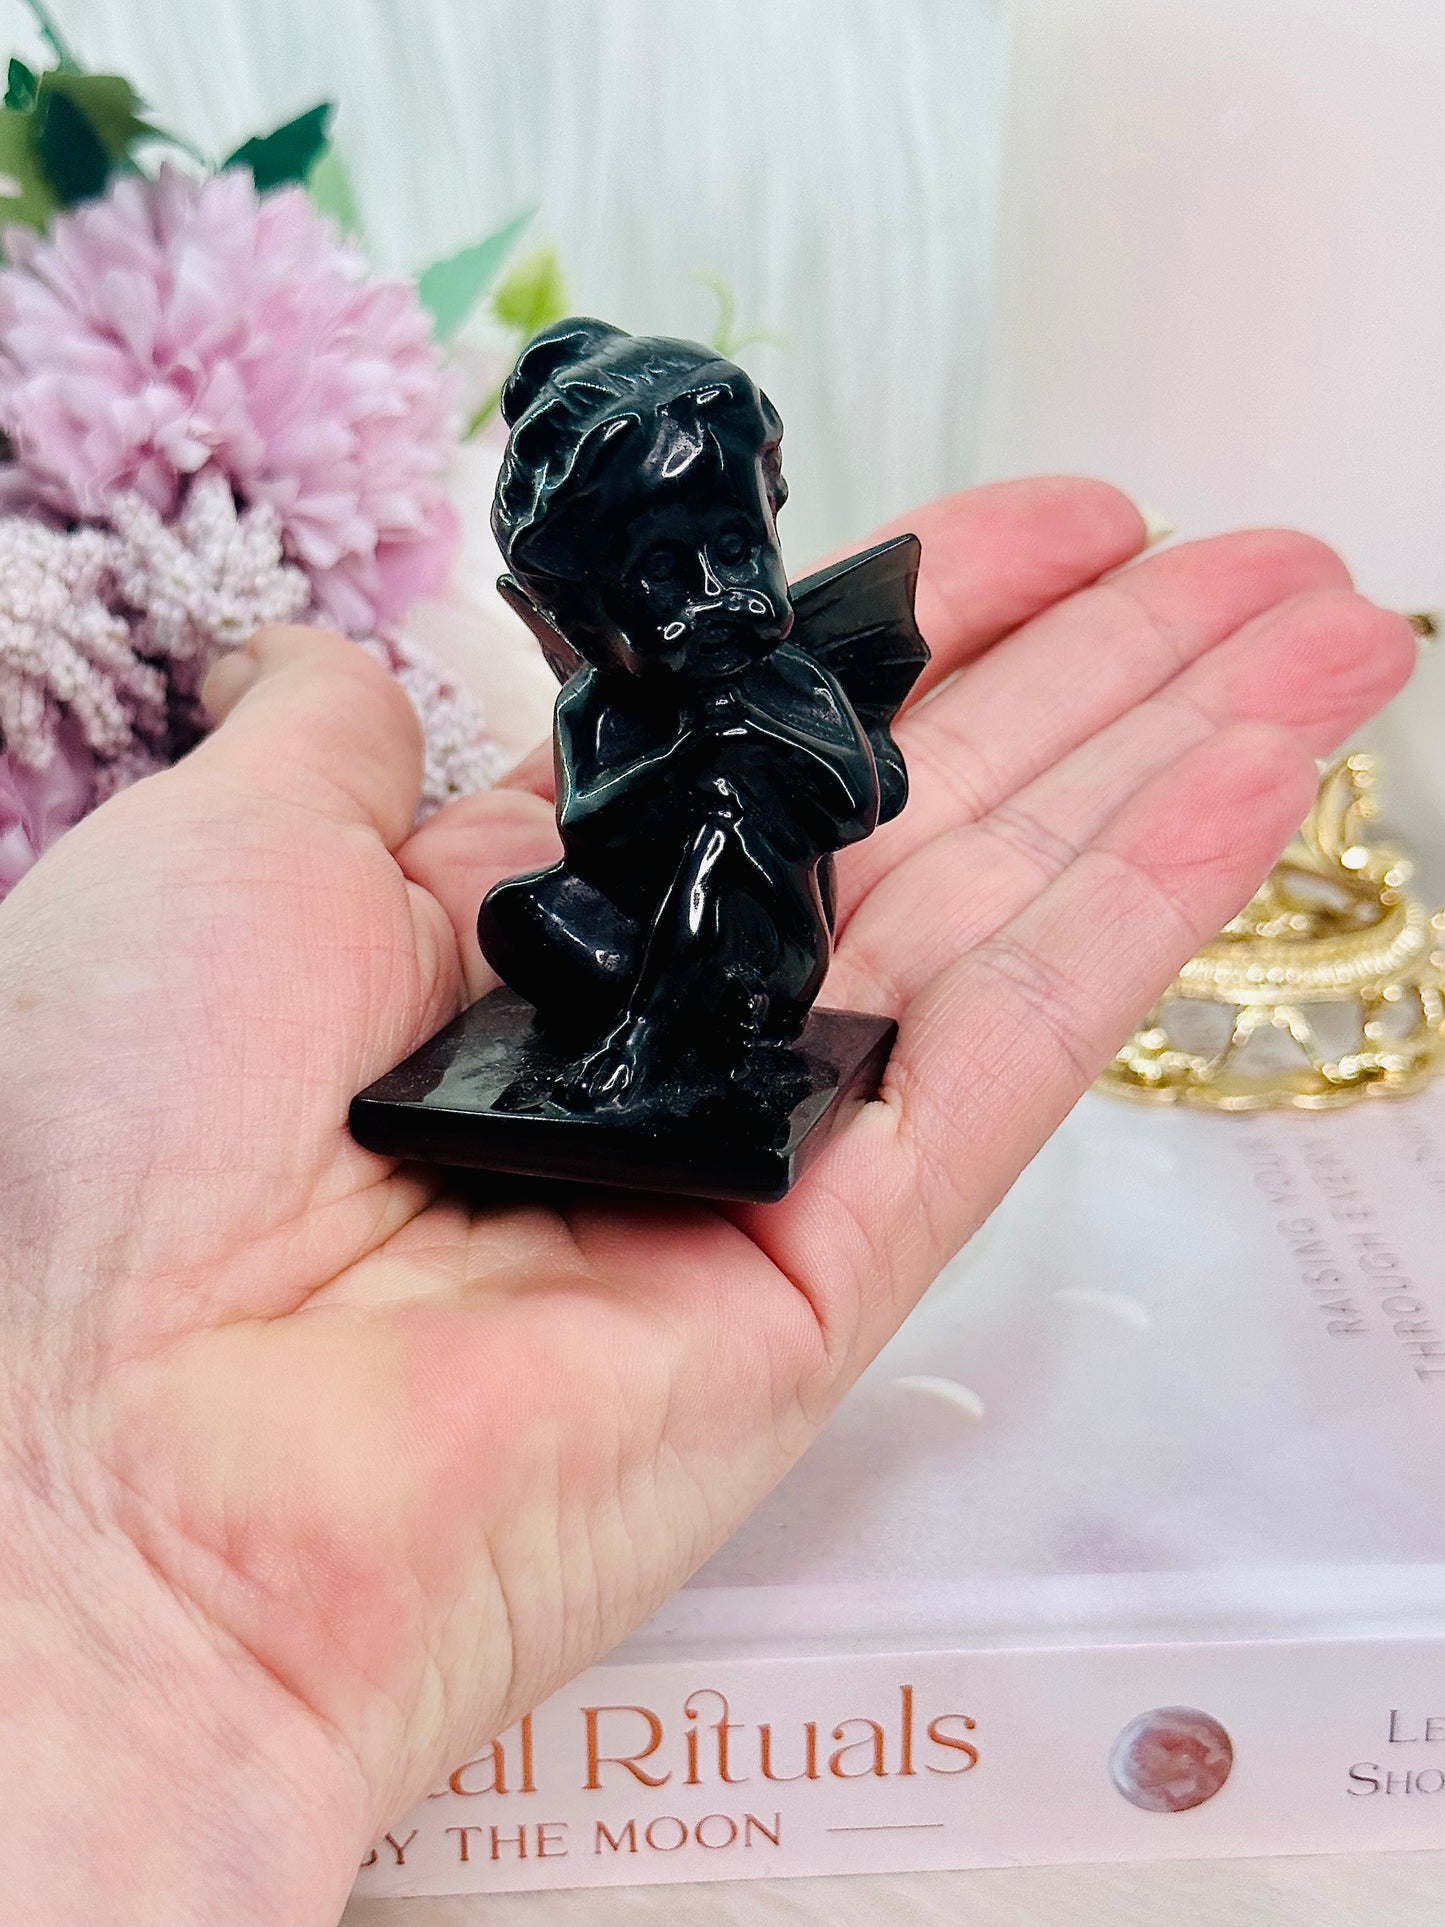 The Cutest Black Obsidian Carved Cherub / Baby Angel